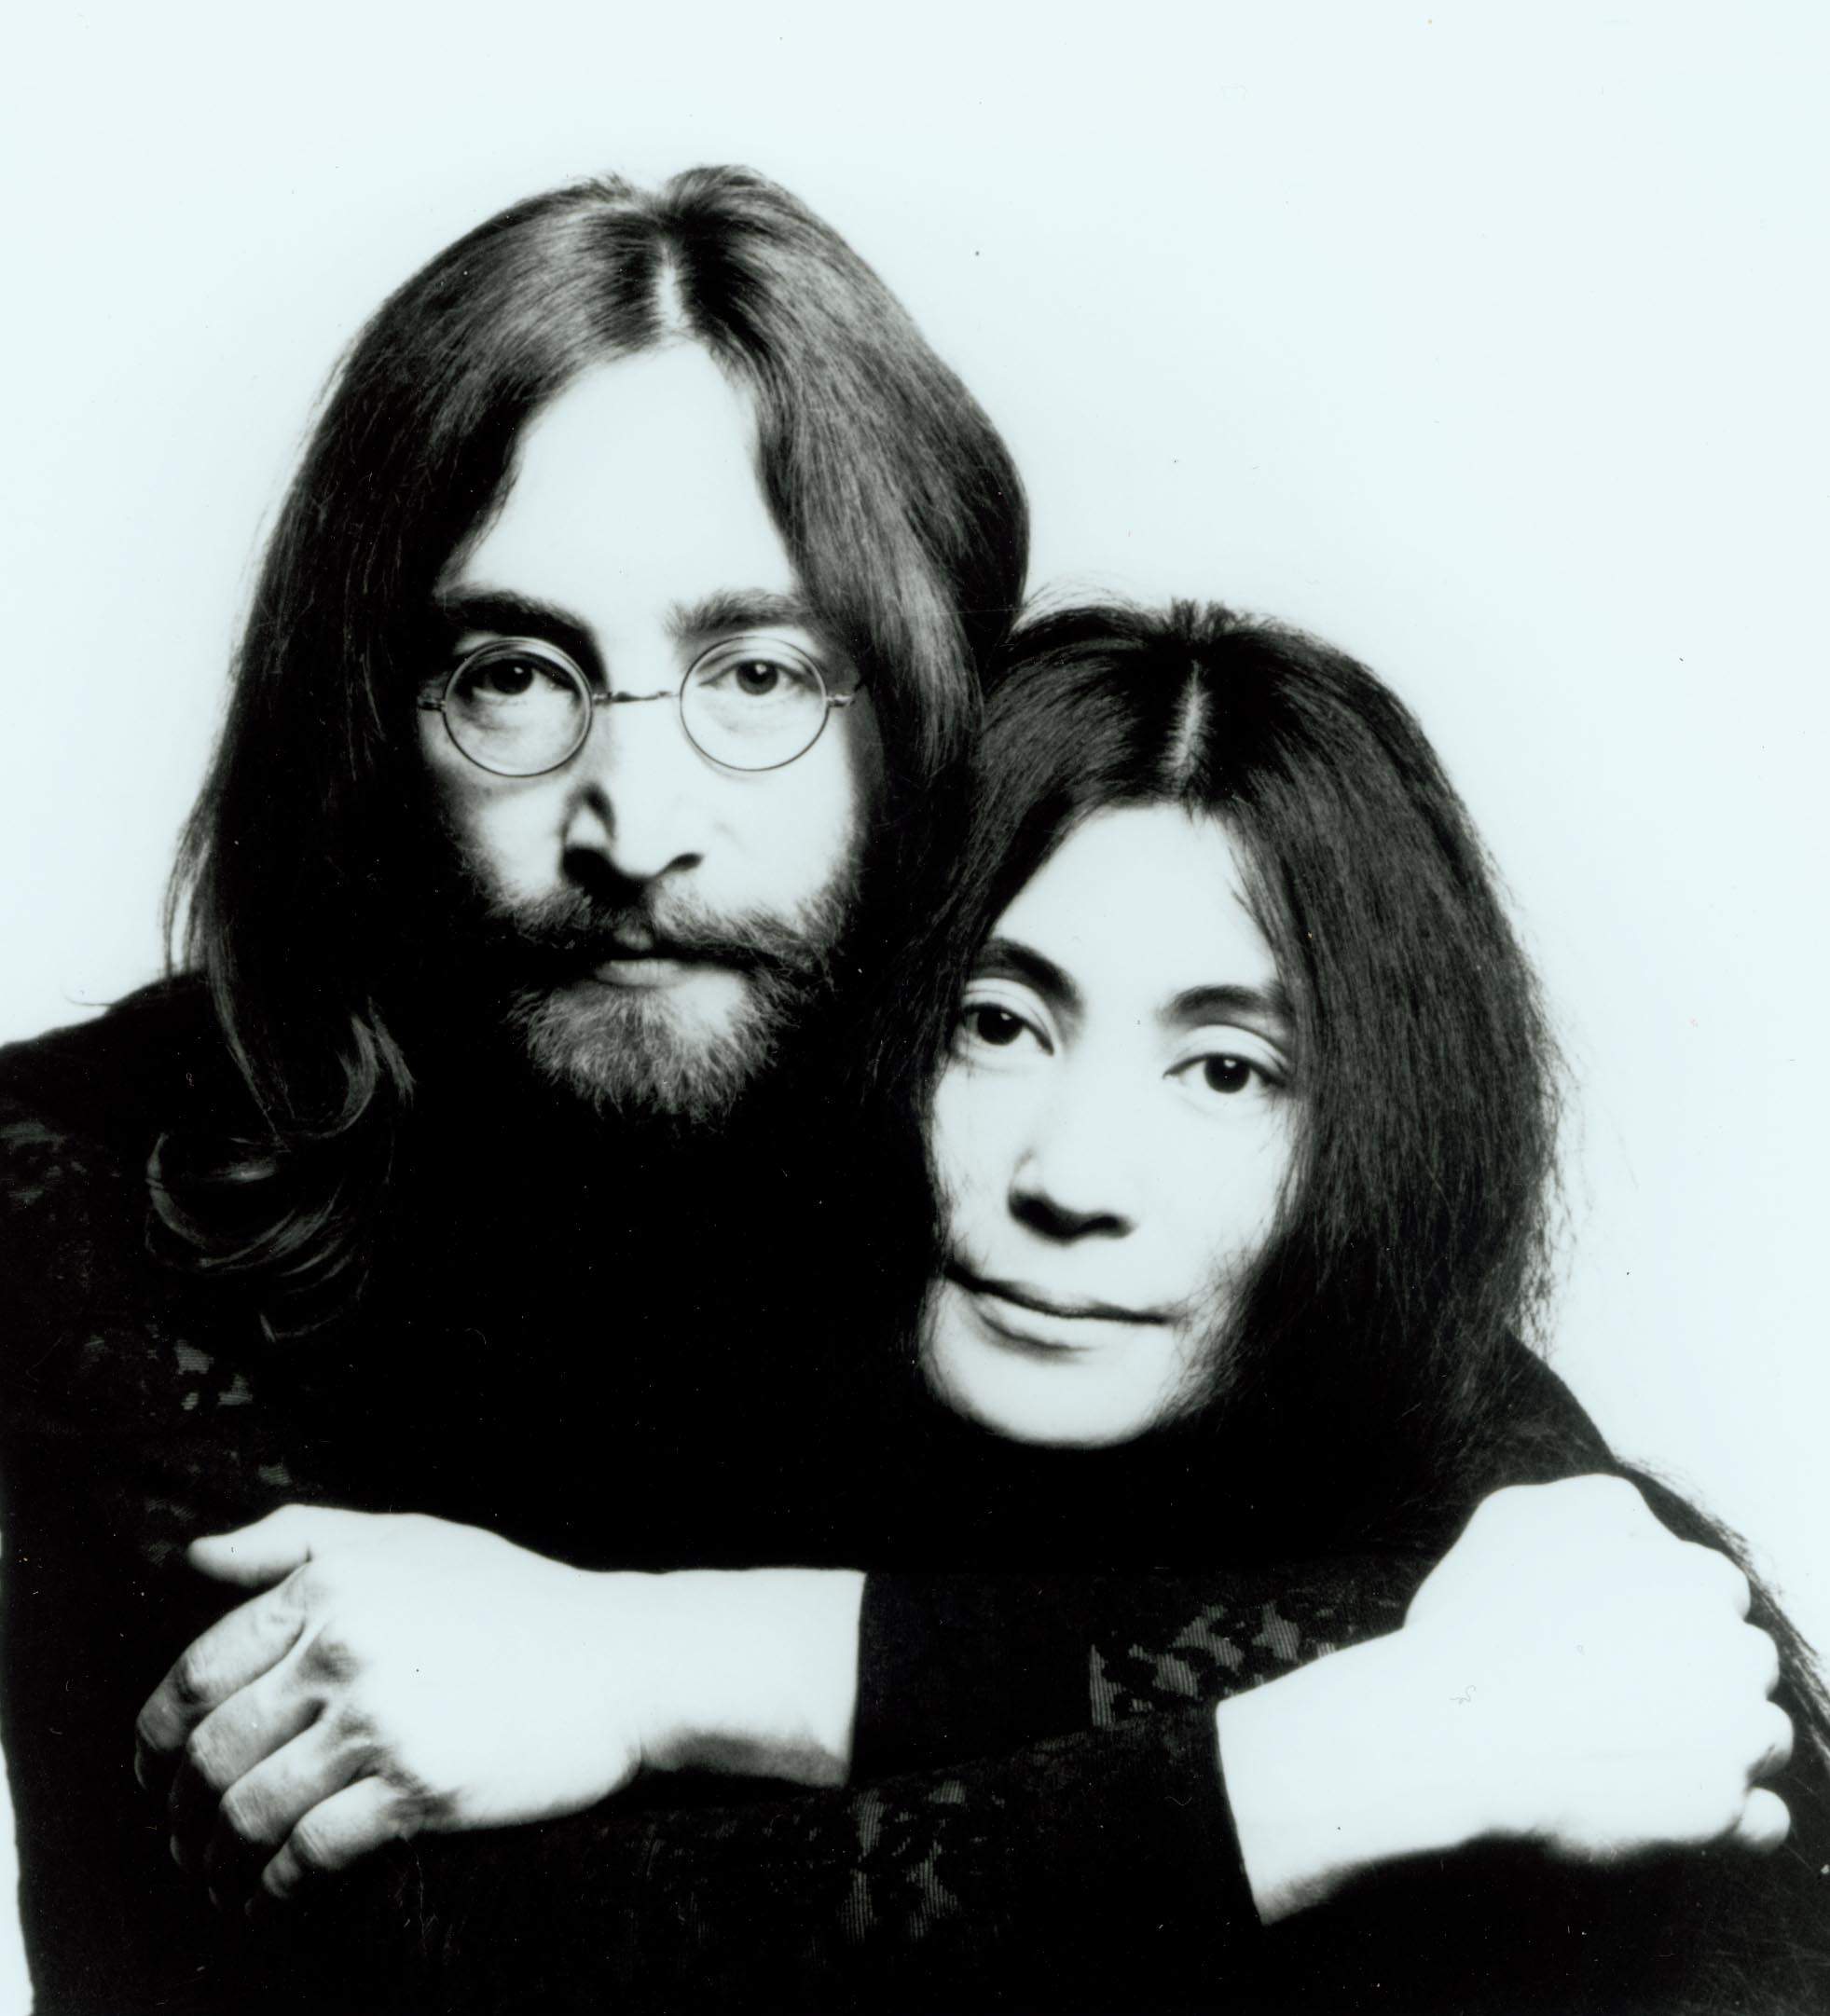 John Lennon Yoko Ono Krieg Ist über Englisch Singer Poster Rock Schwarz Weiß